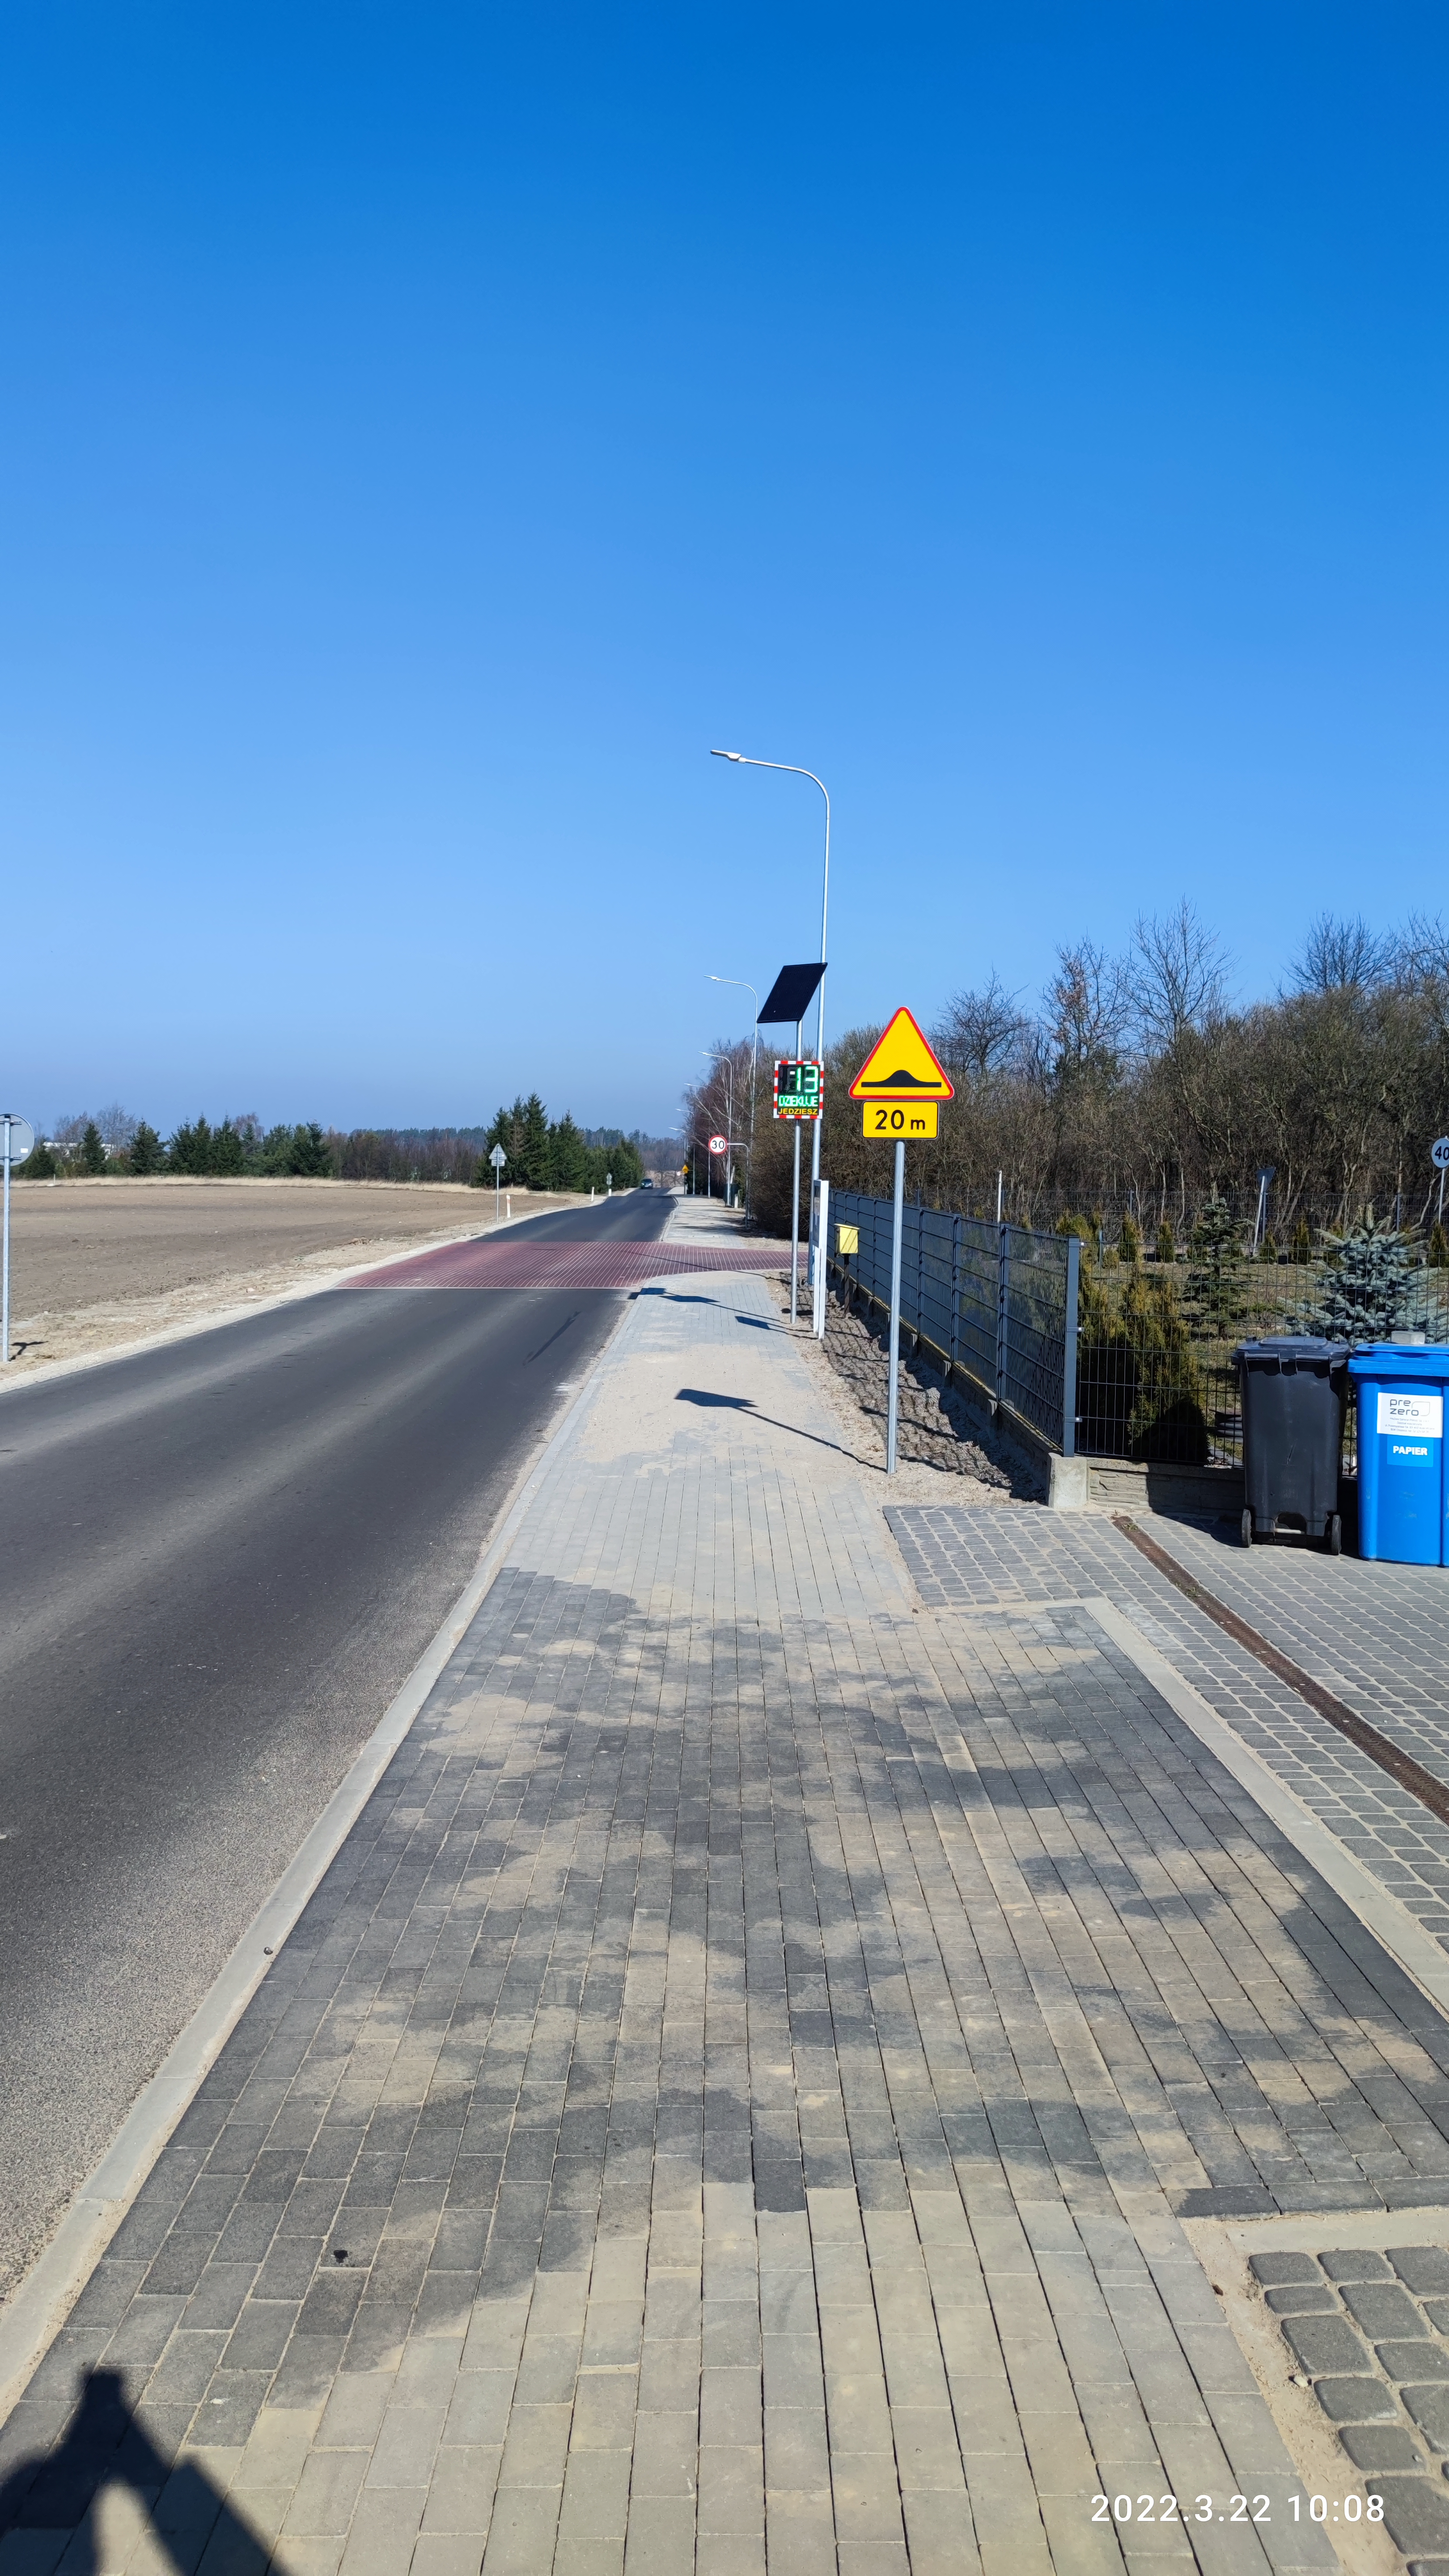 ulica Podmiejska z nową nawierzchnią bitumiczną oraz chodnikiem. W tle radar z aktywną tablicą informującą o prędkości pojazdu